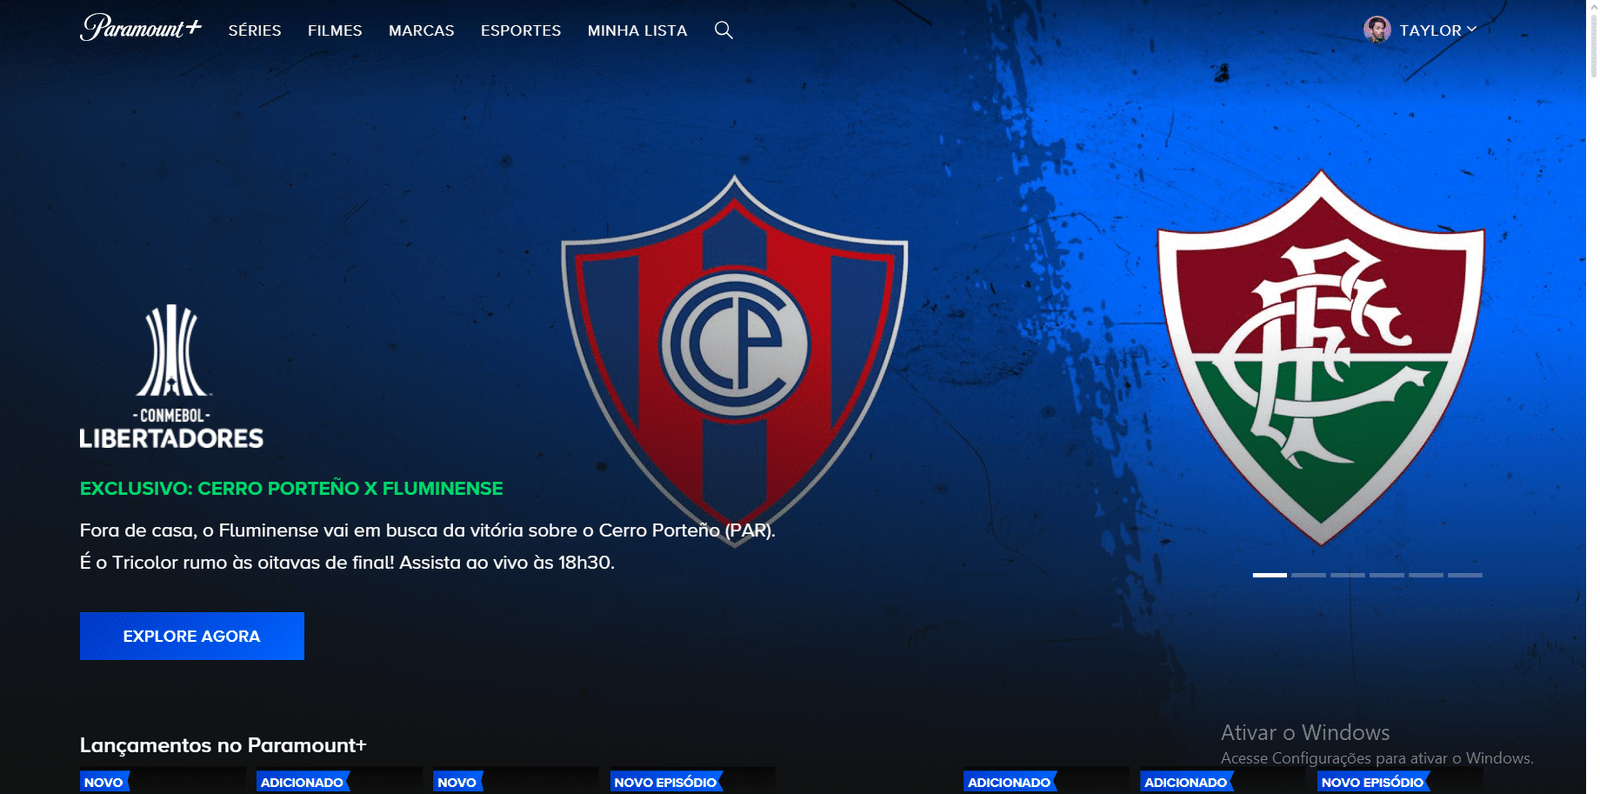 Interface do App Paramount+, apresentando a partida entre Cerro Porteño x Fluminense